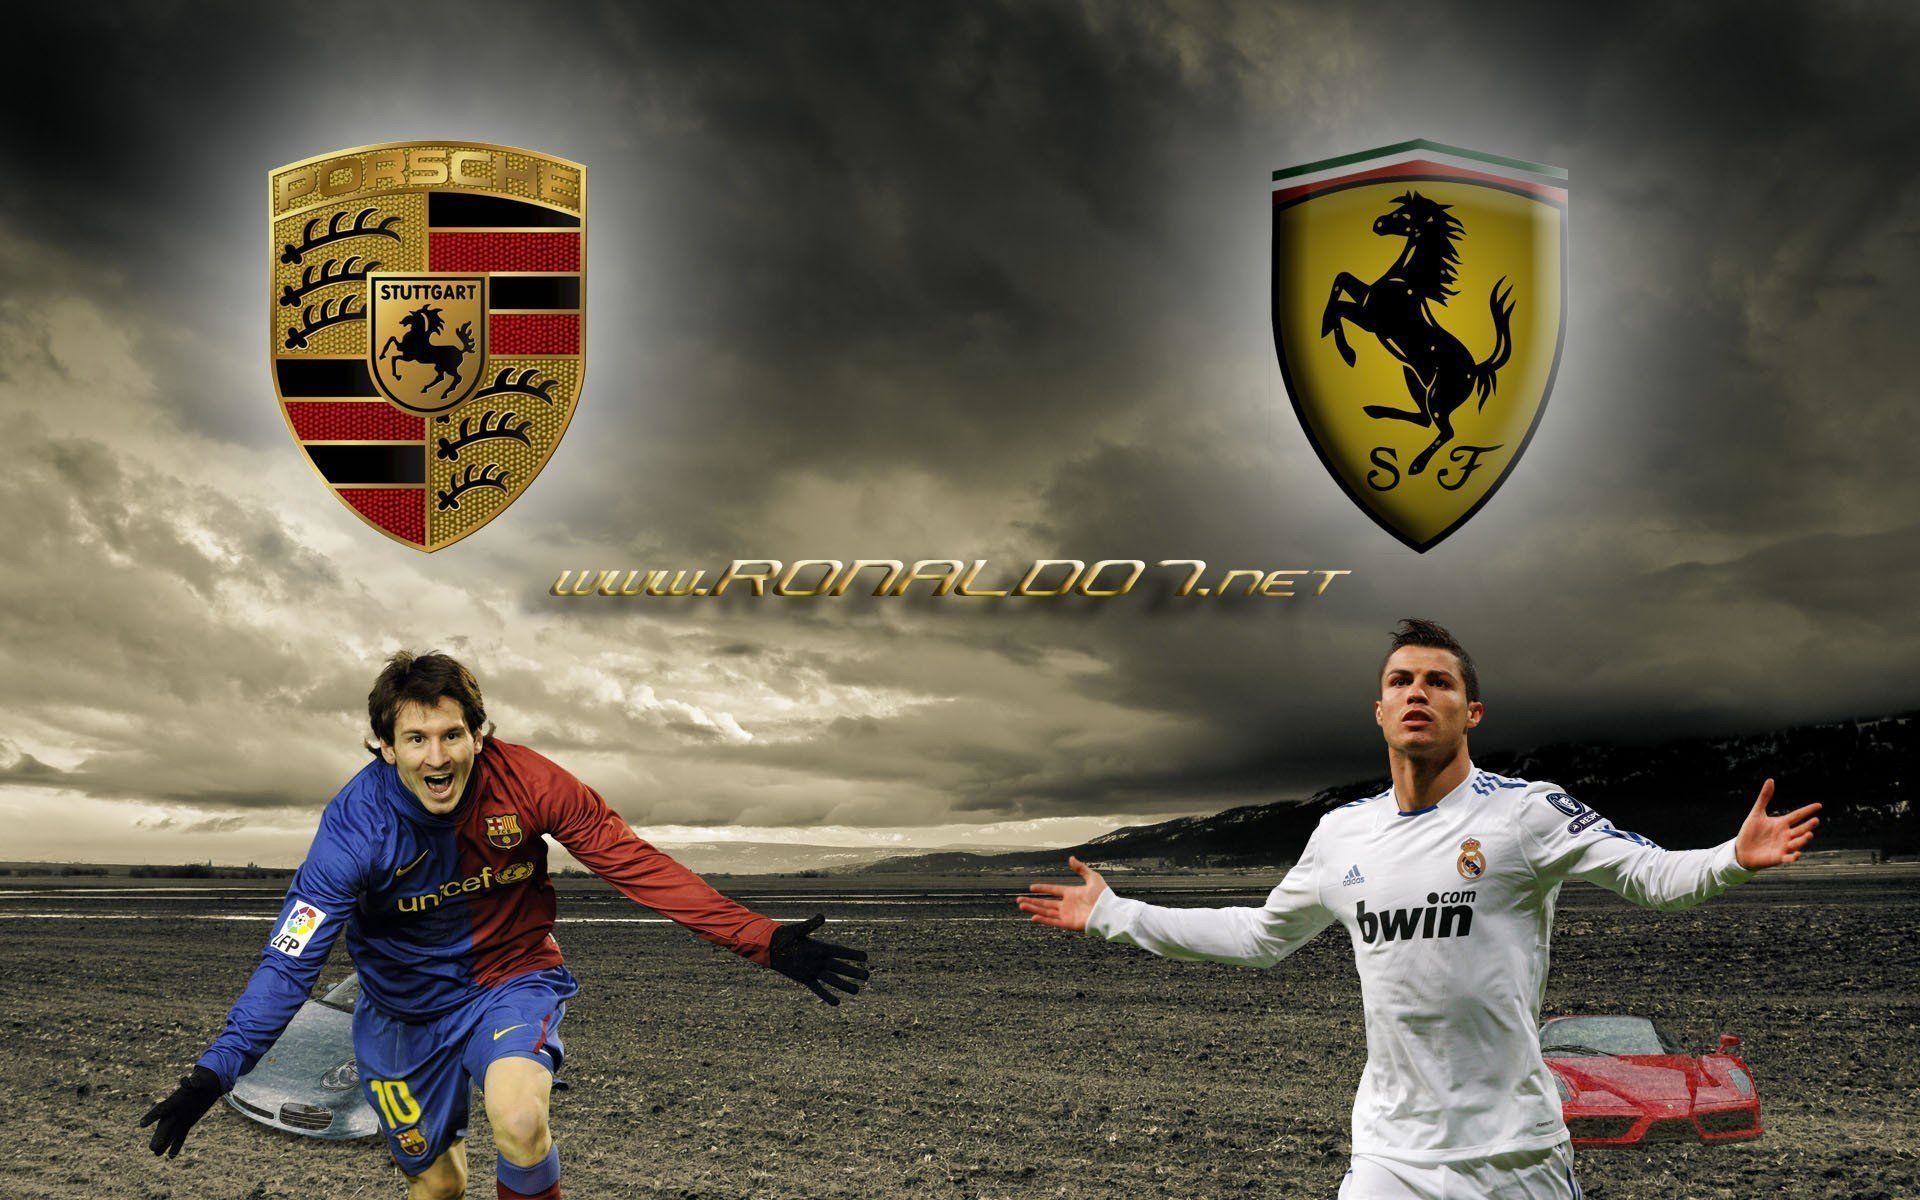 Cristiano Ronaldo Vs Lionel Messi Wallpaper Image